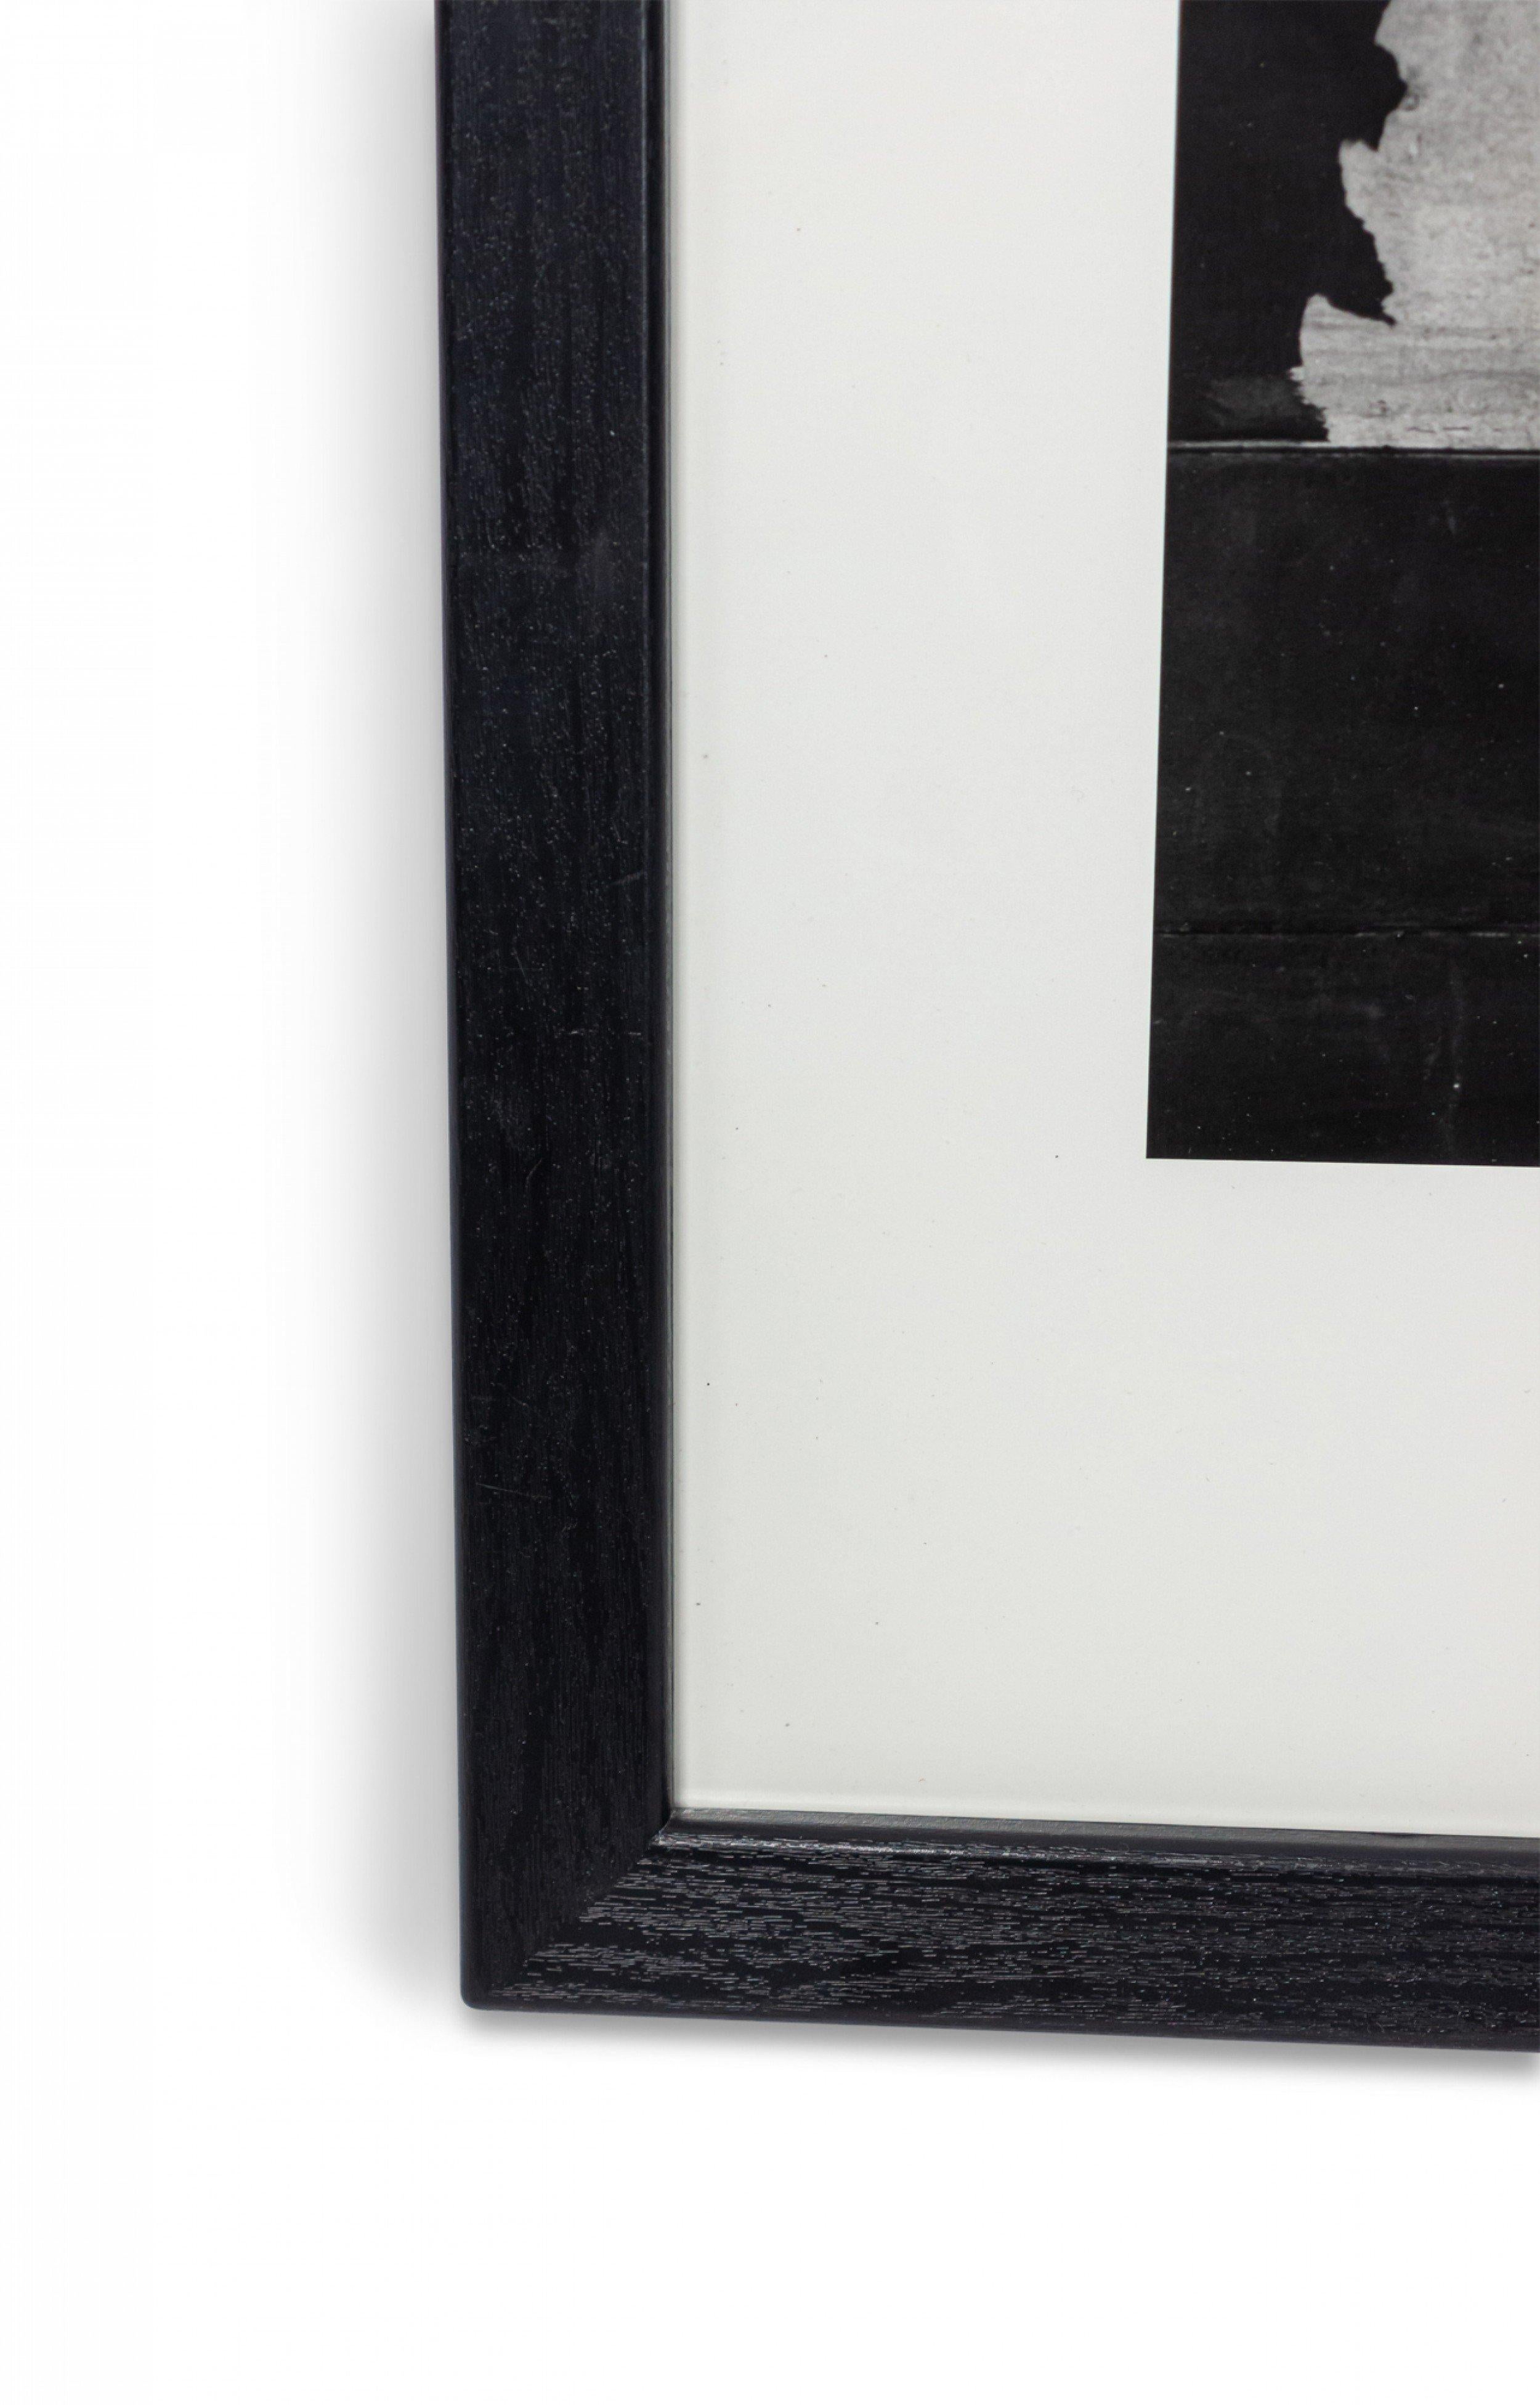 Zeitgenössische abstrakte Schwarz-Weiß-Fotografie in einem schwarzen rechteckigen Rahmen.
 